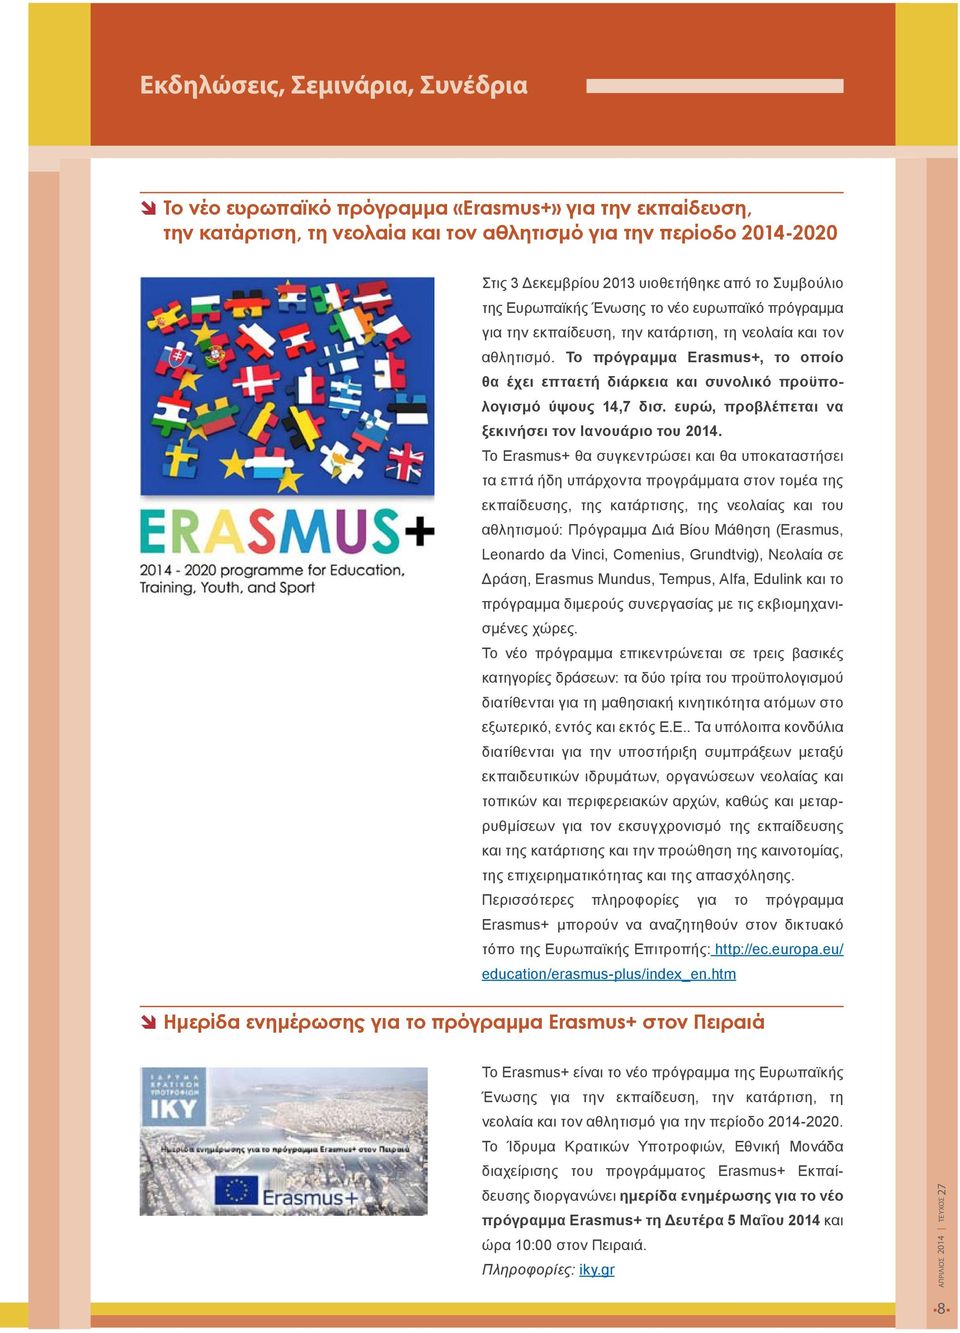 Το πρόγραμμα Erasmus+, το οποίο θα έχει επταετή διάρκεια και συνολικό προϋπολογισμό ύψους 14,7 δισ. ευρώ, προβλέπεται να ξεκινήσει τον Ιανουάριο του 2014.